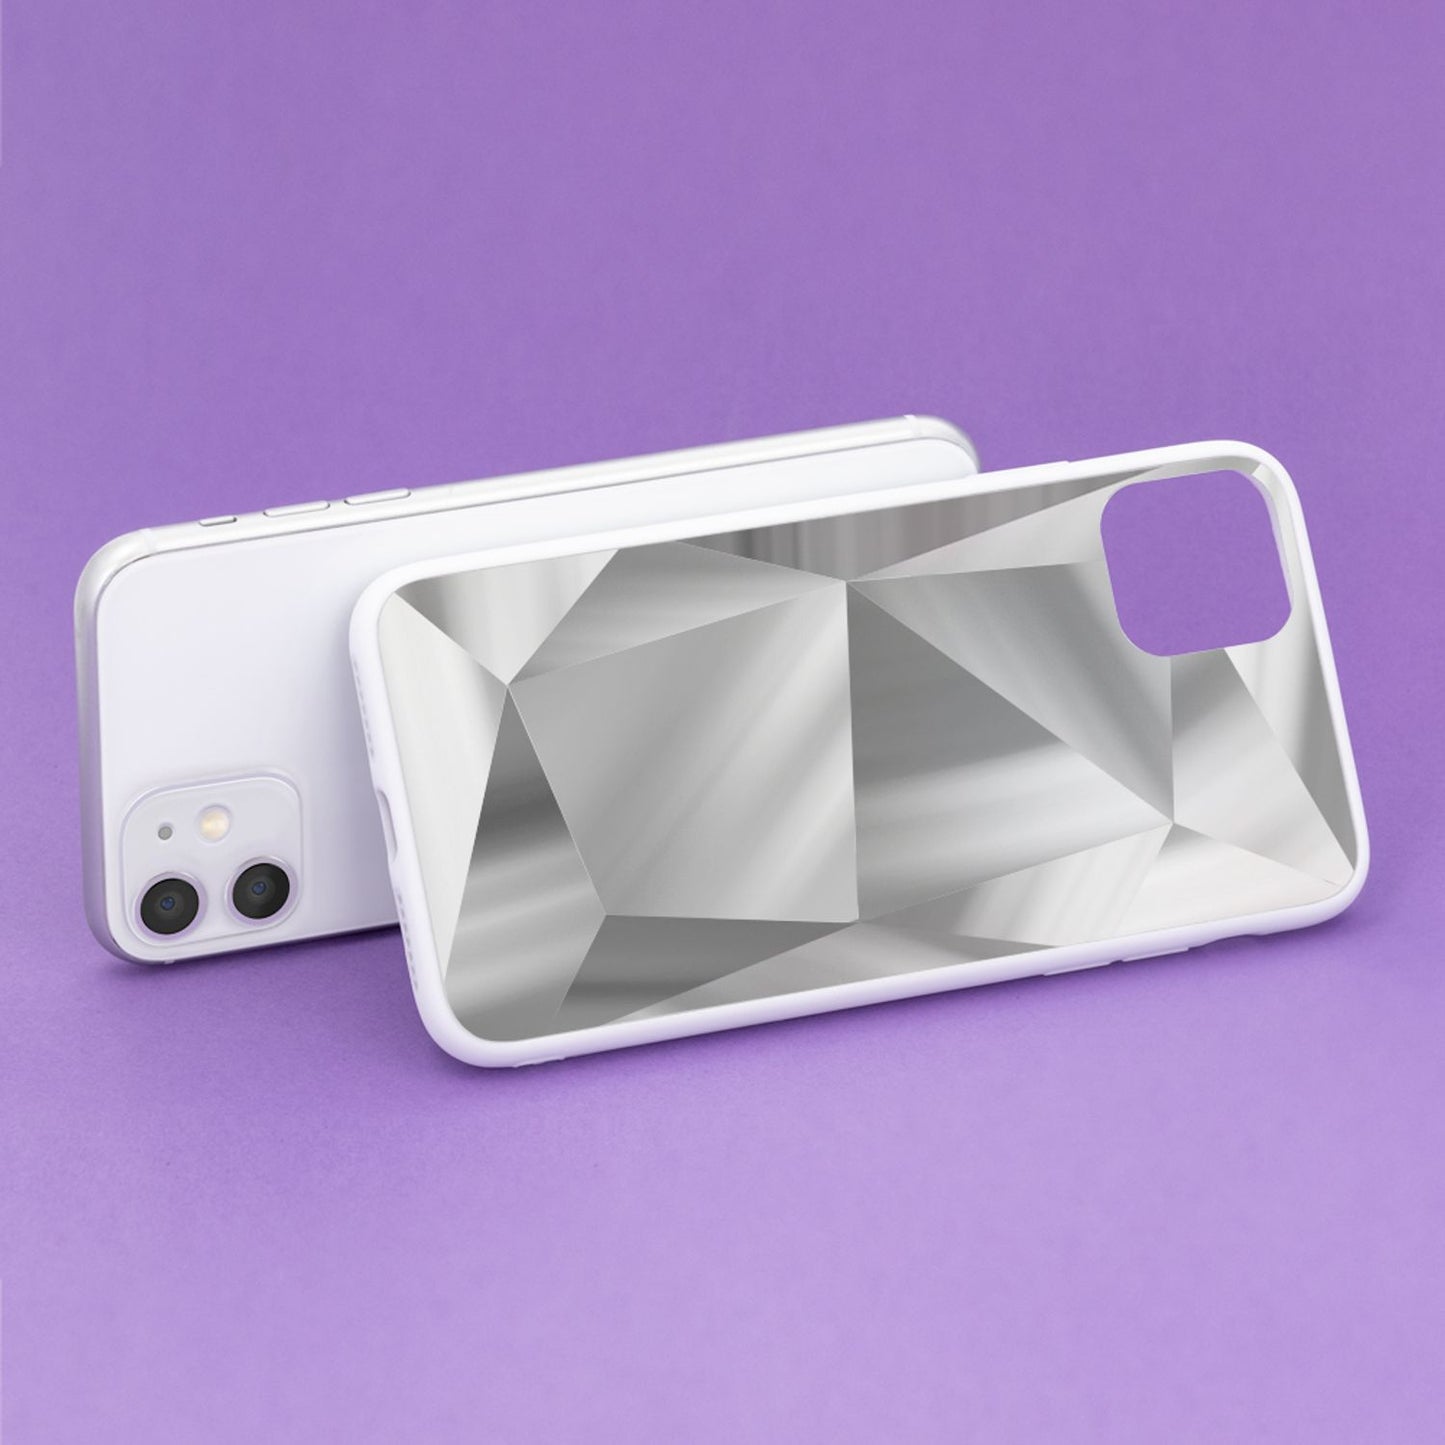 NALIA Handyhülle für iPhone 11 Hülle, Reflektierende Diamant Schutzhülle Cover